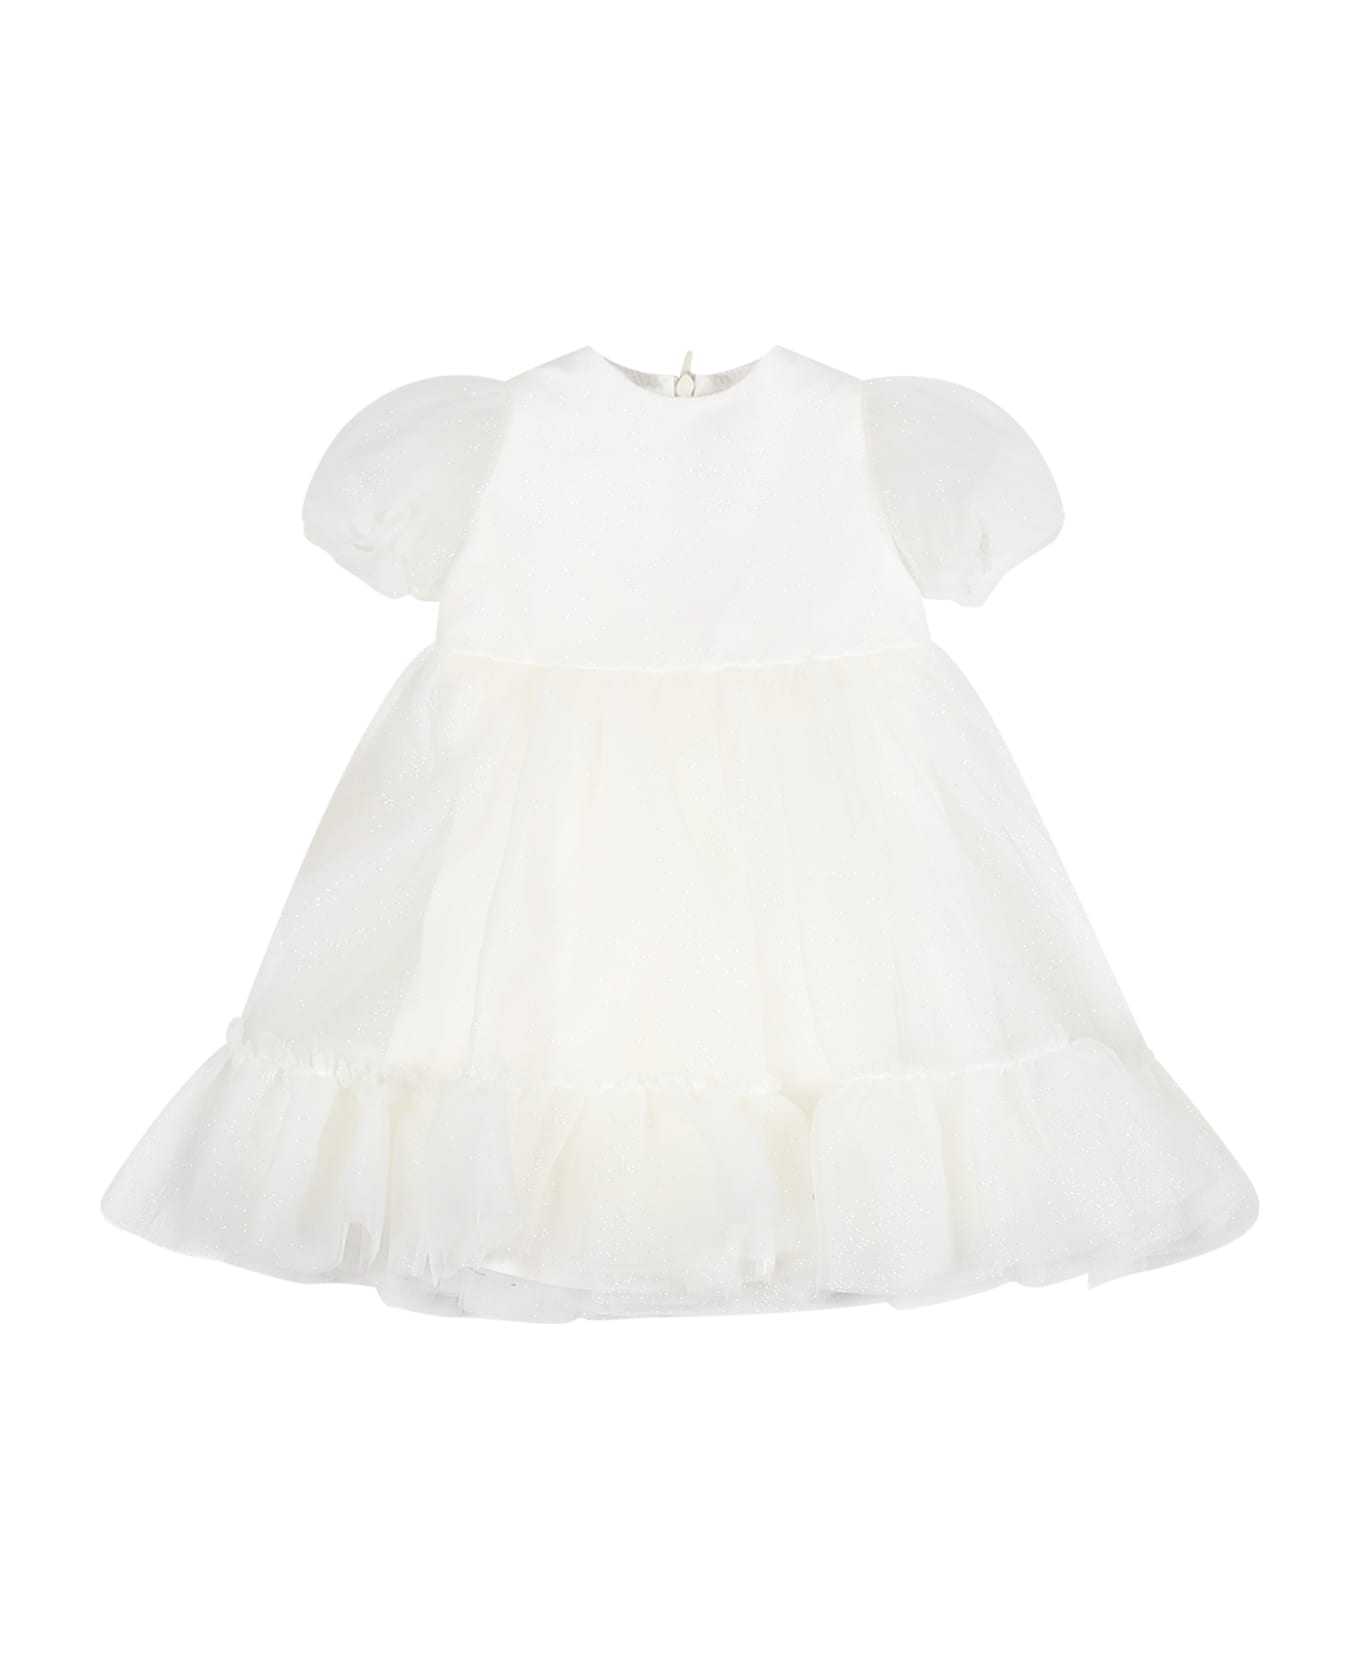 Simonetta White Dress For Baby Girl - Ivory